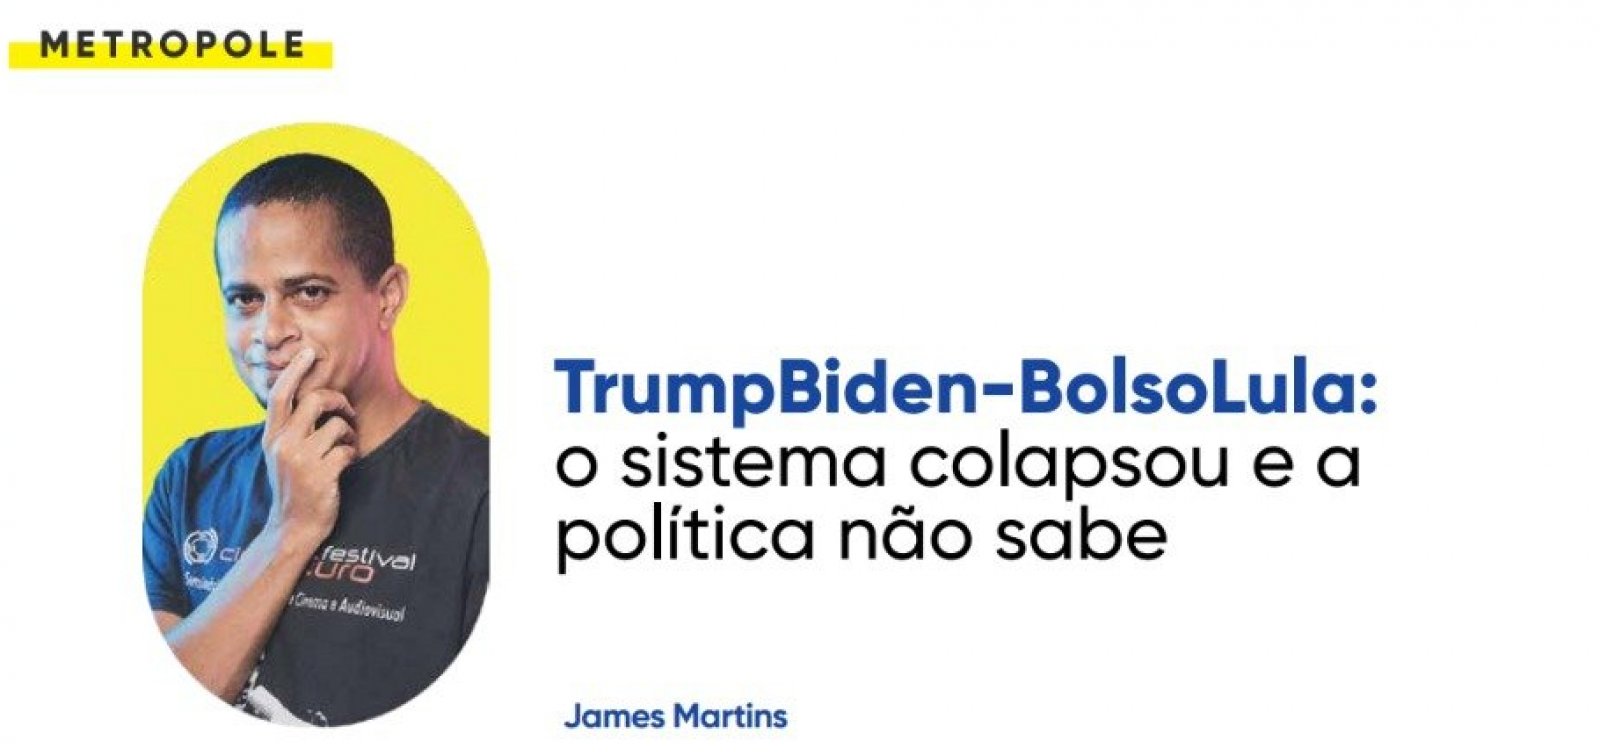 TrumpBiden-BolsoLula: o sistema colapsou e a política não sabe